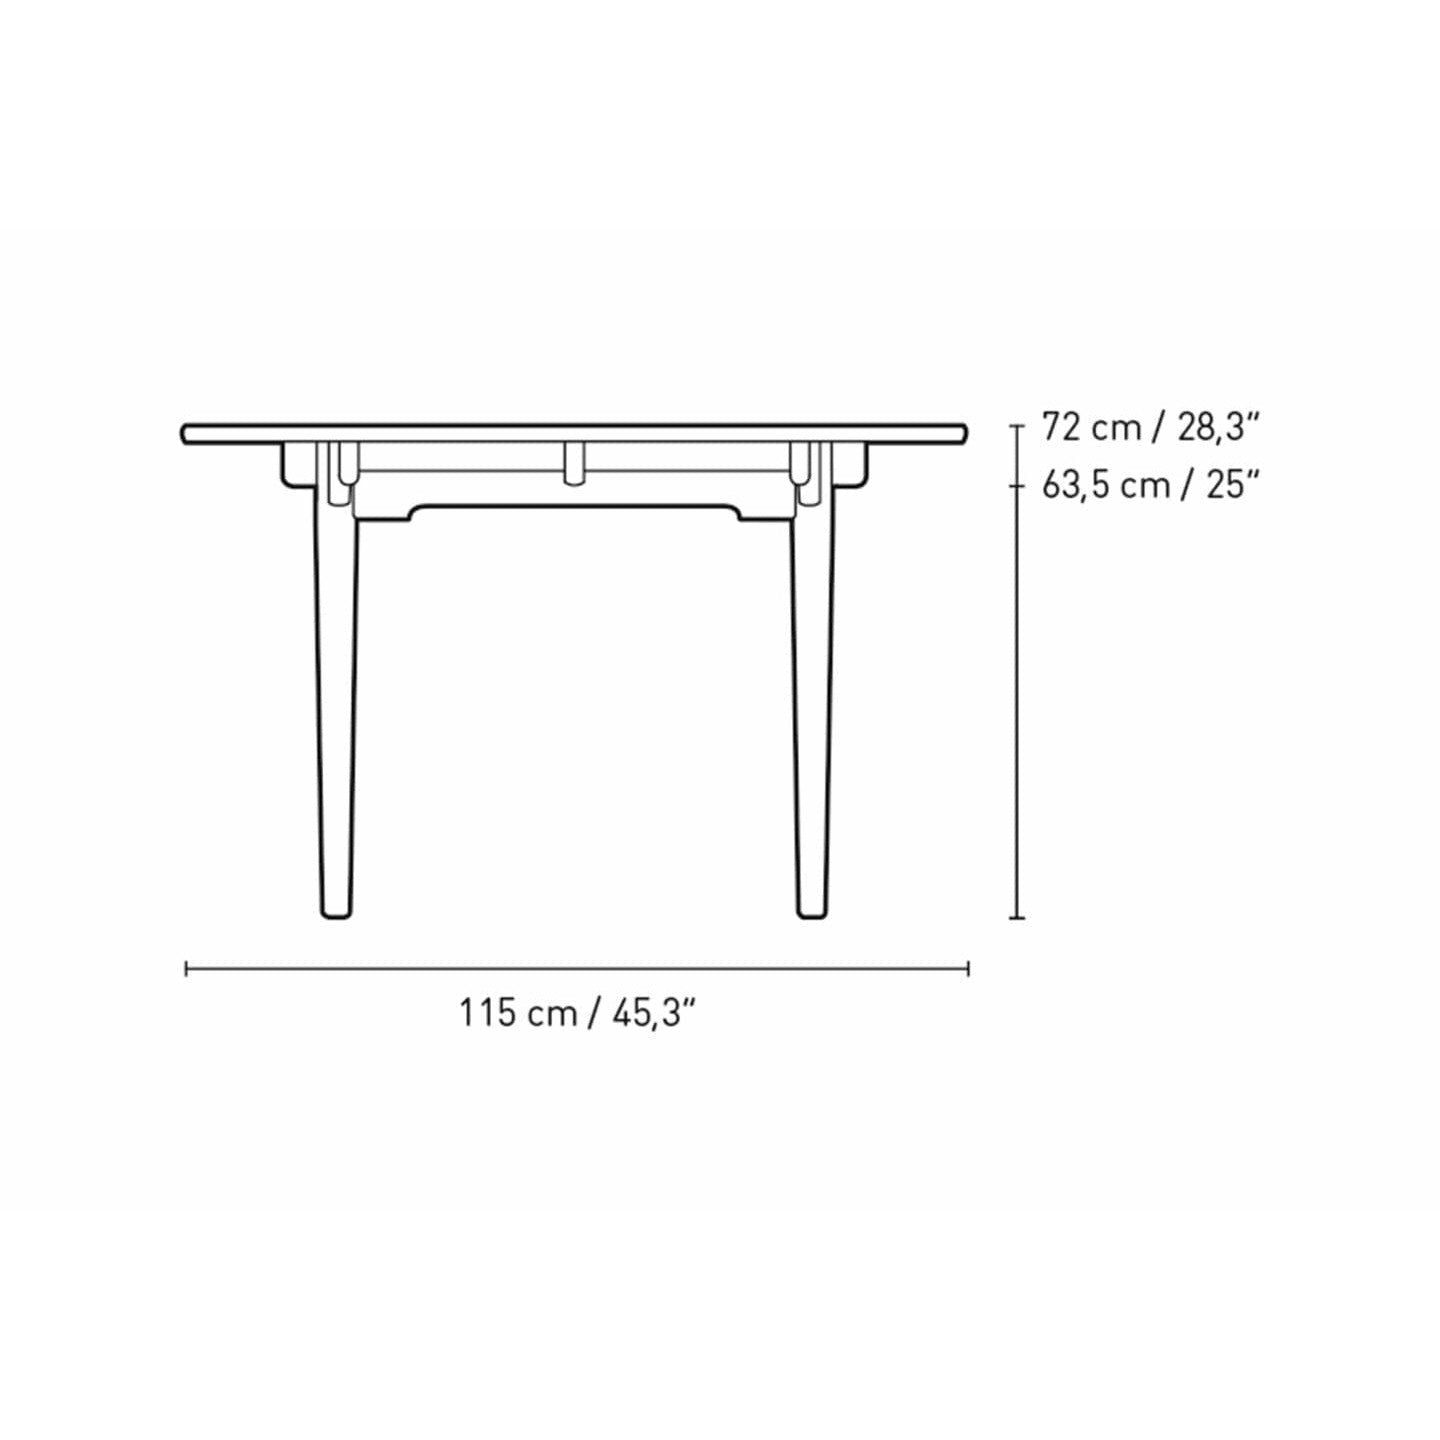 Carl Hansen CH339 matbord designad för 2 dragningsplattor, ekrökfärgad olja